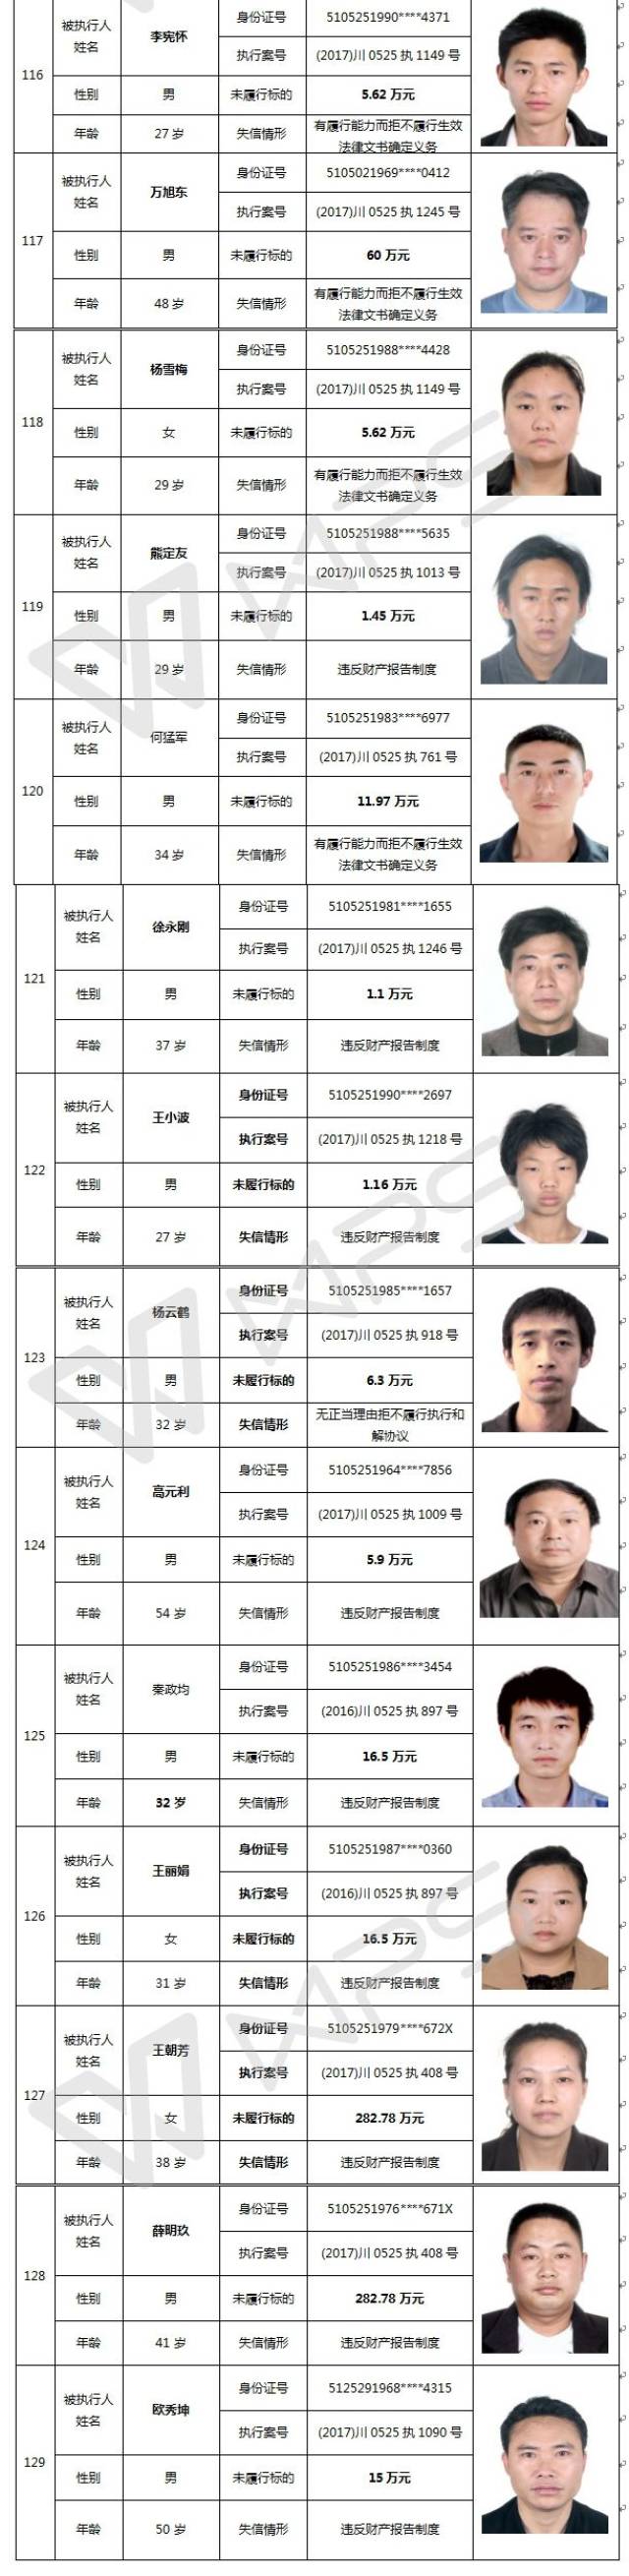 名单信息,四川亚泰建设有限公司法定代表人谢志平等 146名"老赖"榜上